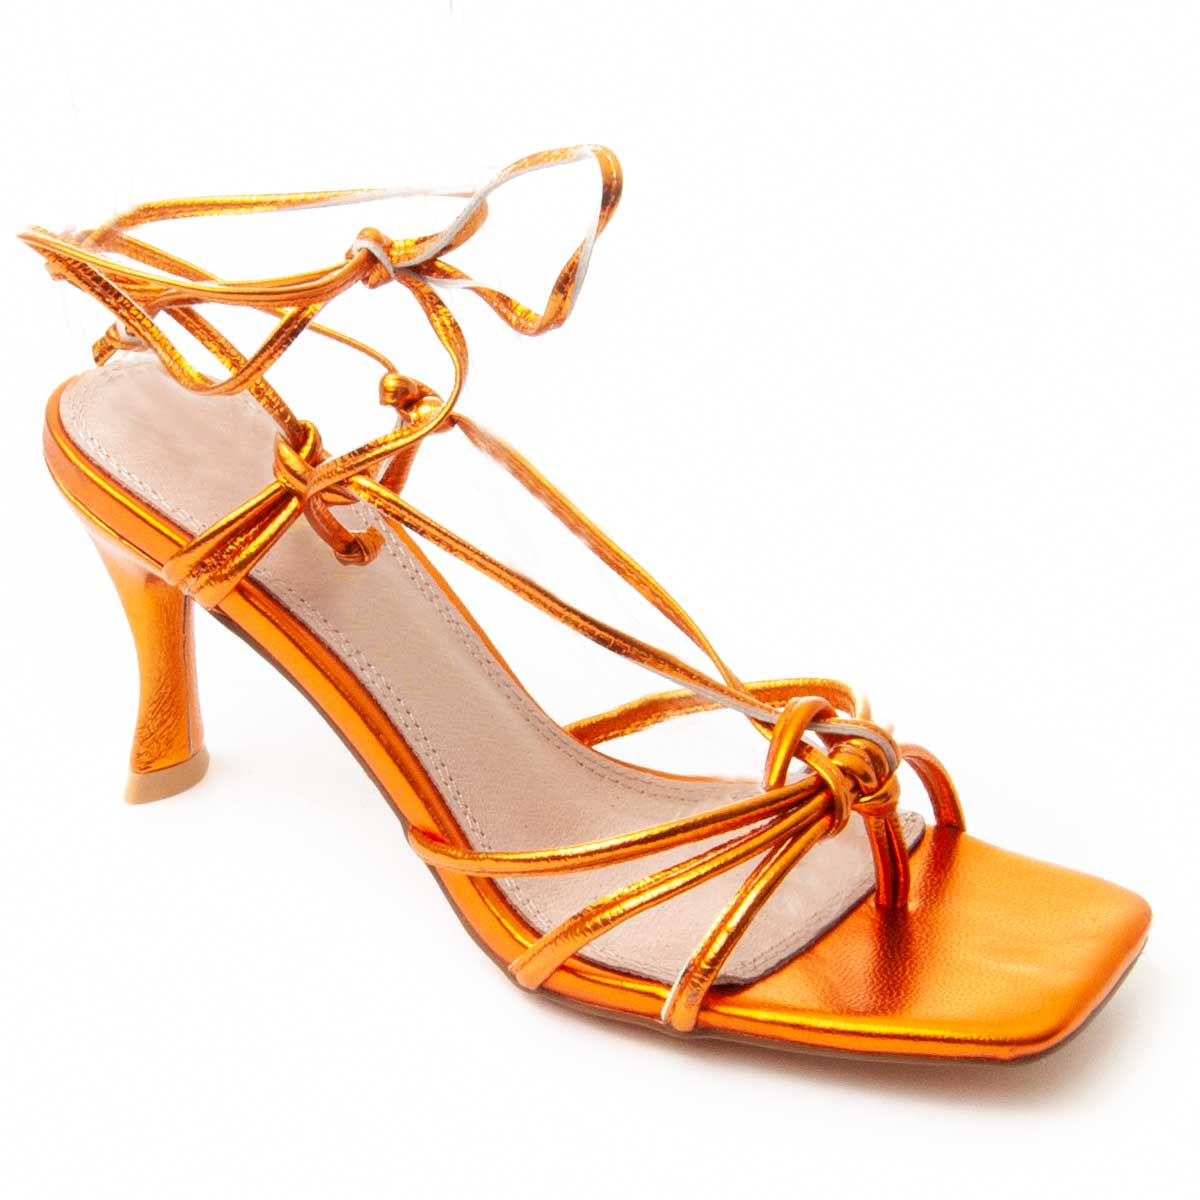 Sandalias de Tacón - Naranja - Altura: 6 cm